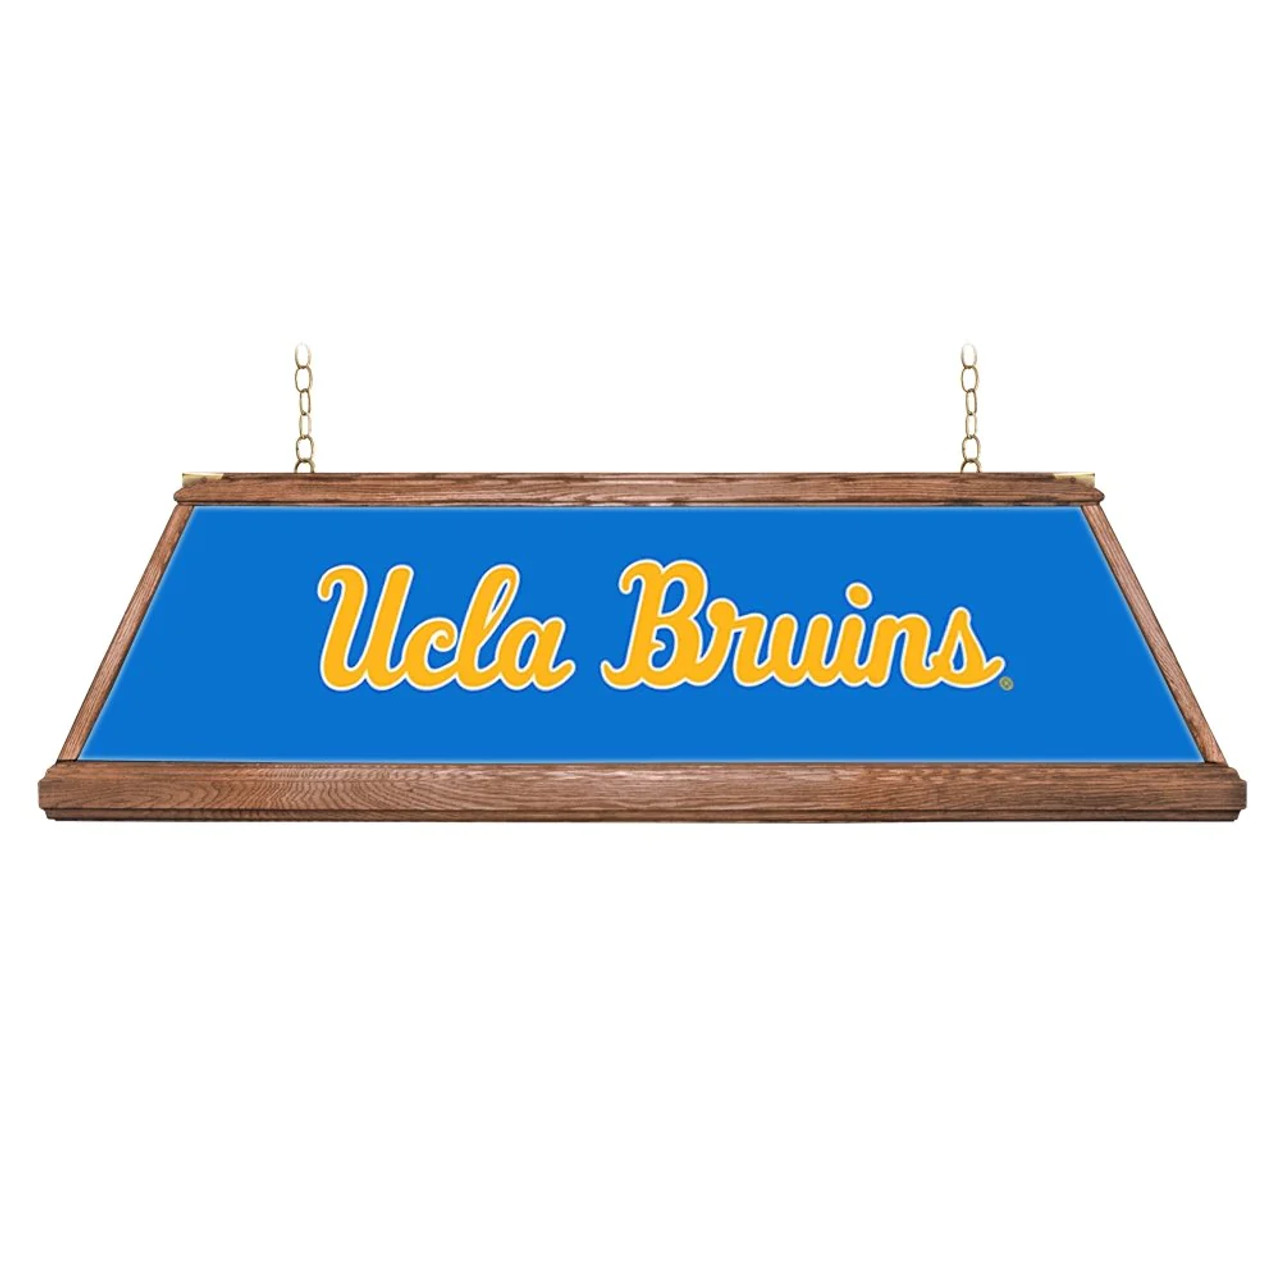 UCLA Bruins: Premium Wood Blue Pool Table Light